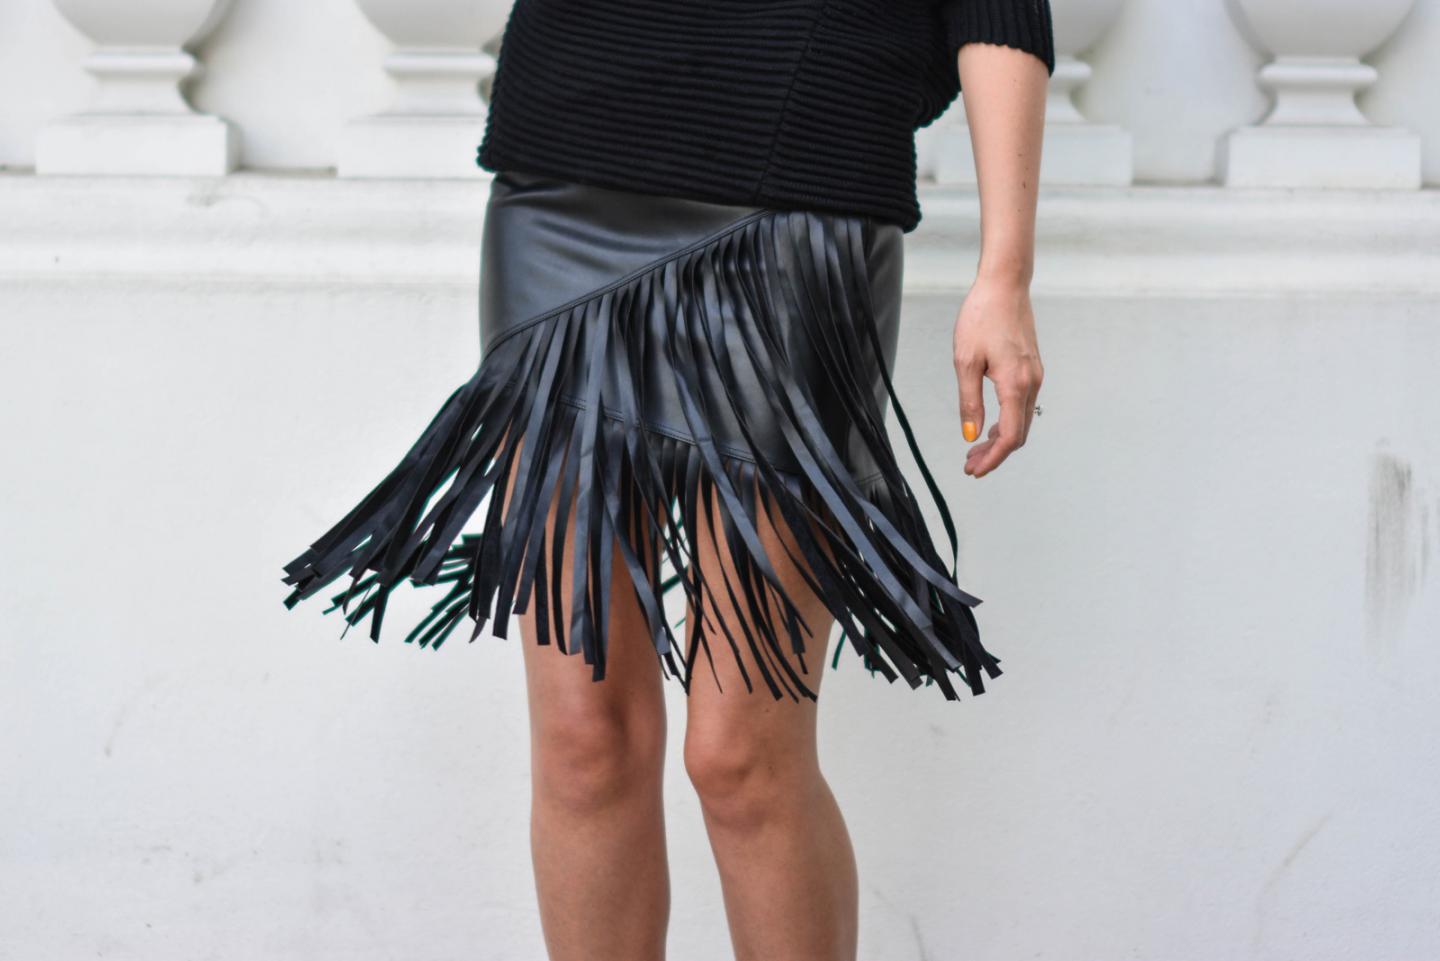 EJSTYLE - Emma Hill wears River Island faux leather fringe tassel skirt